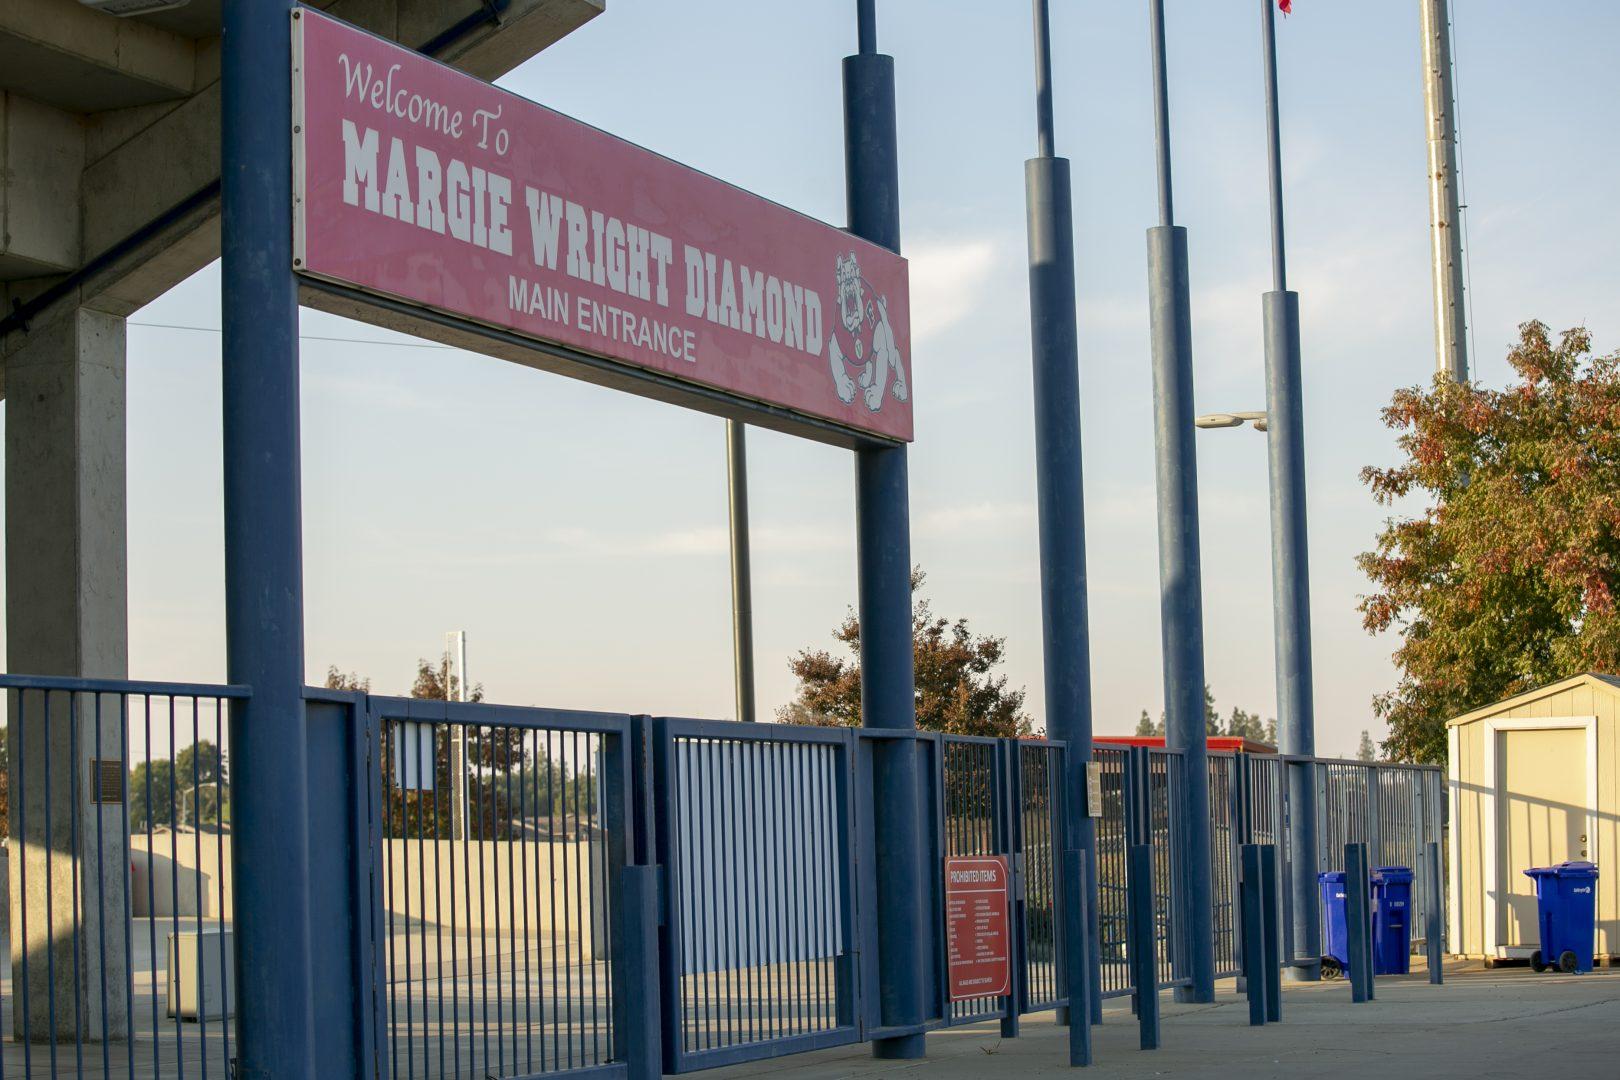 Margie Wright Diamond entrance at Fresno State. (Collegian File Photo)